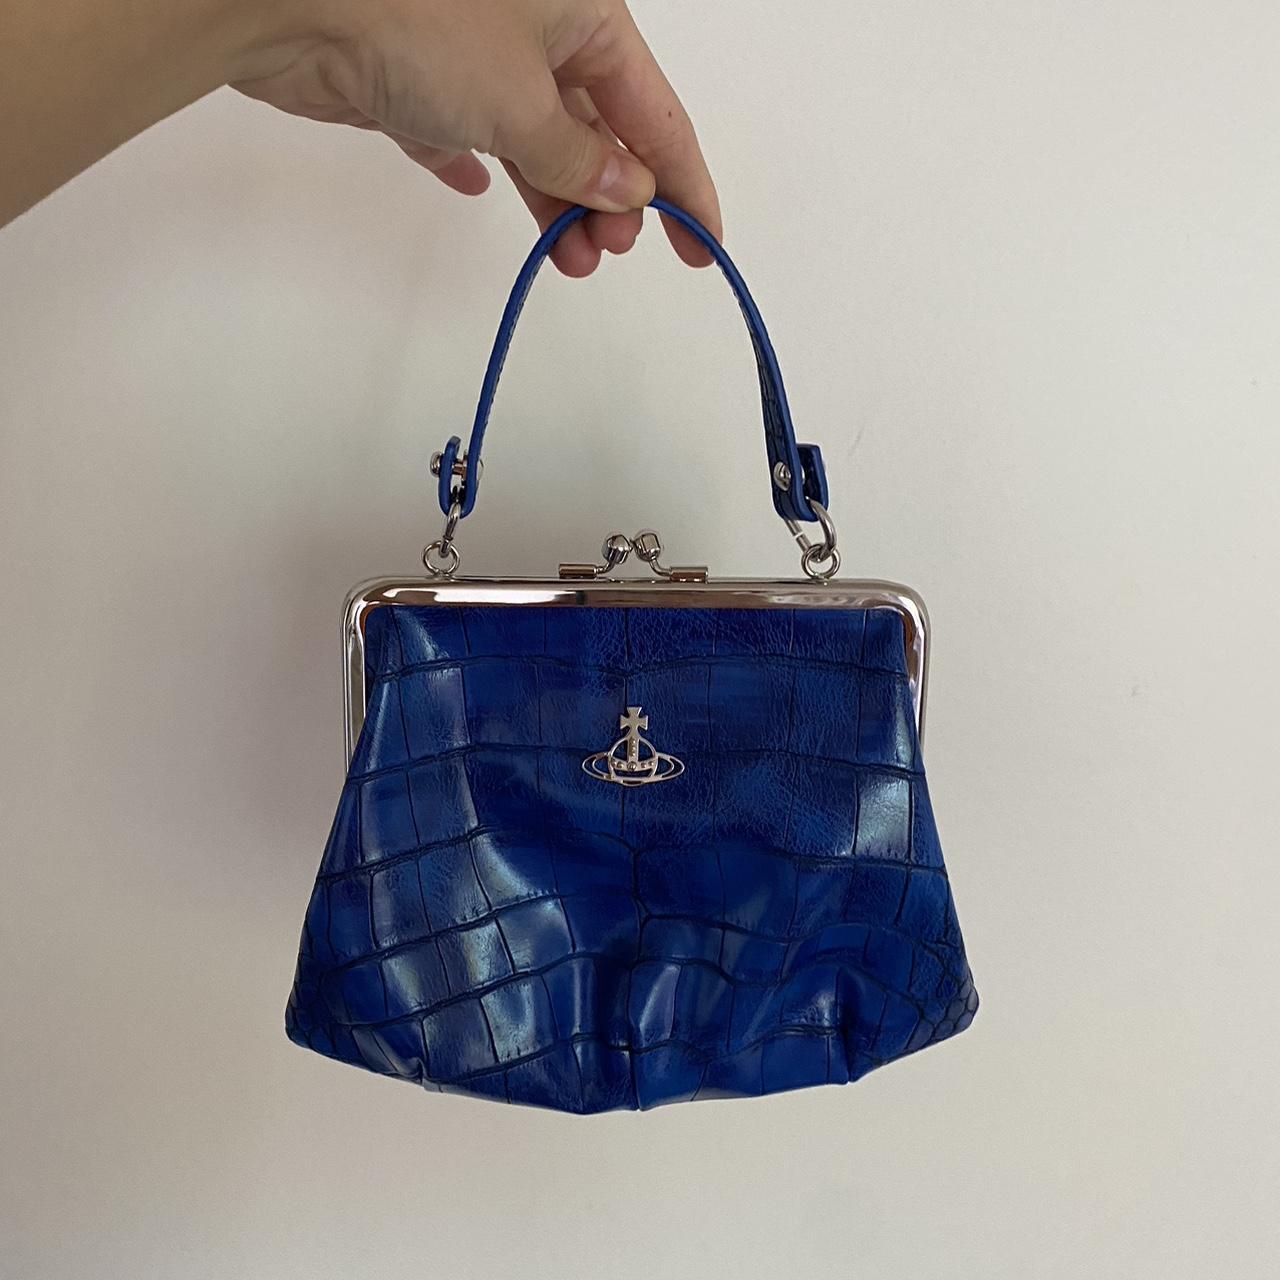 Vintage Vivienne Westwood Heart Bag Handbag Purse - Depop